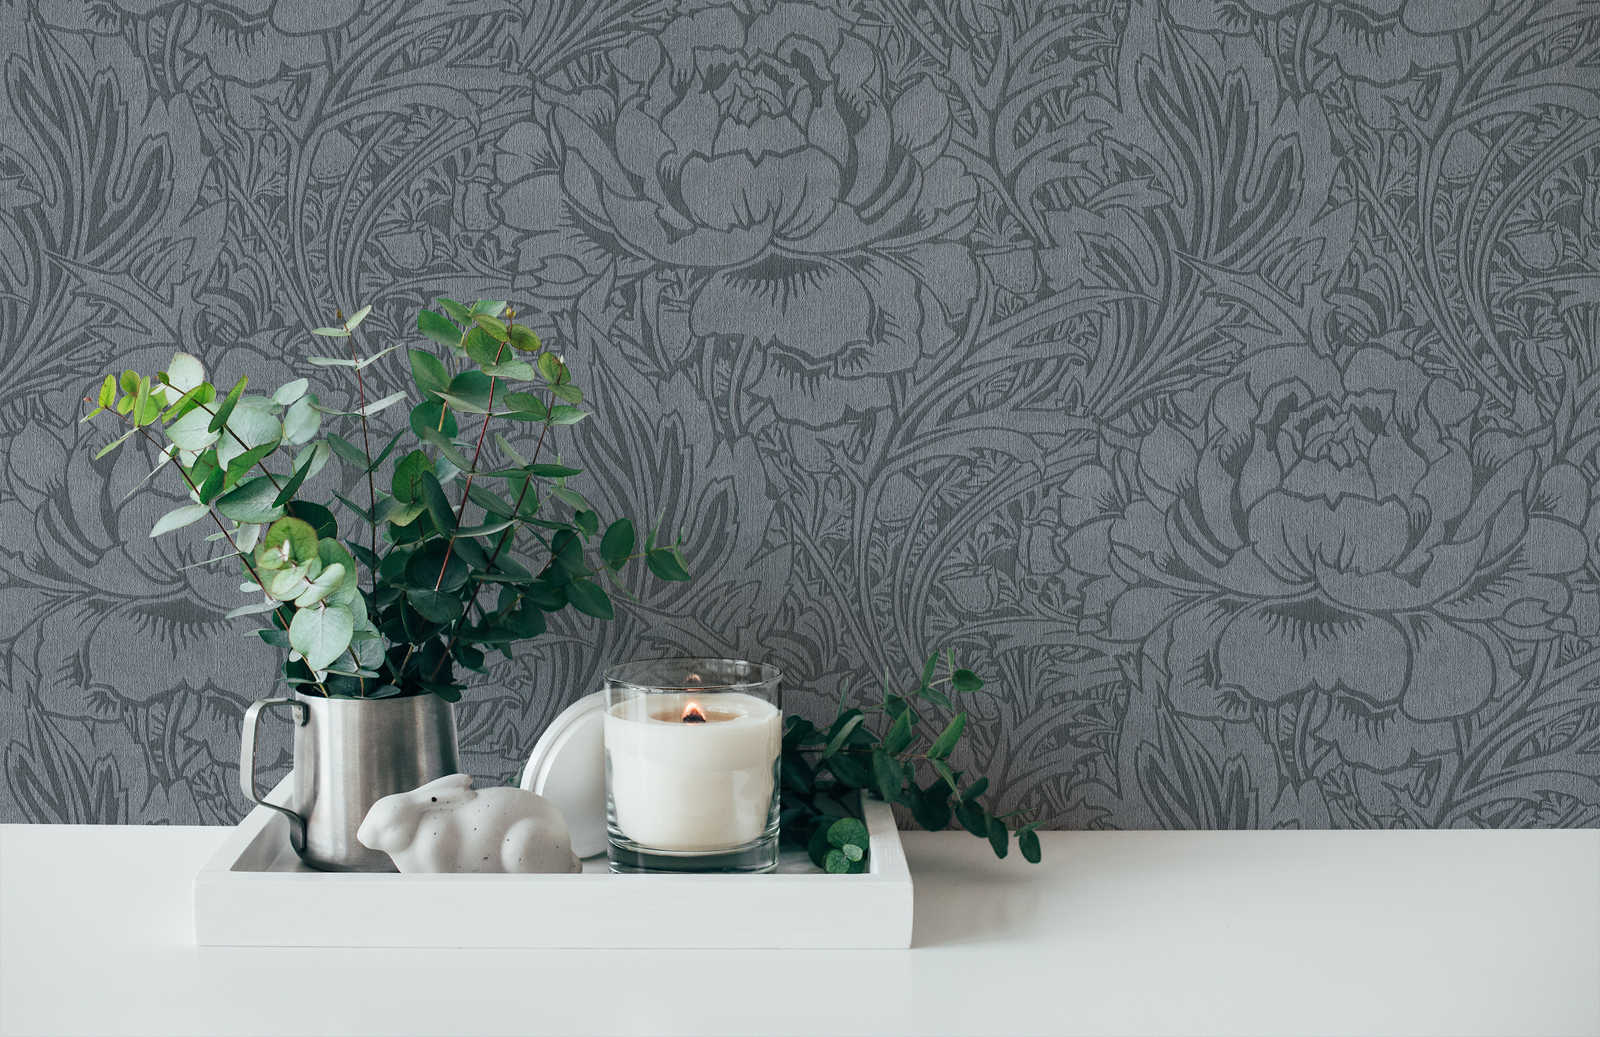             Papel pintado floral gris con diseño floral art nouveau
        